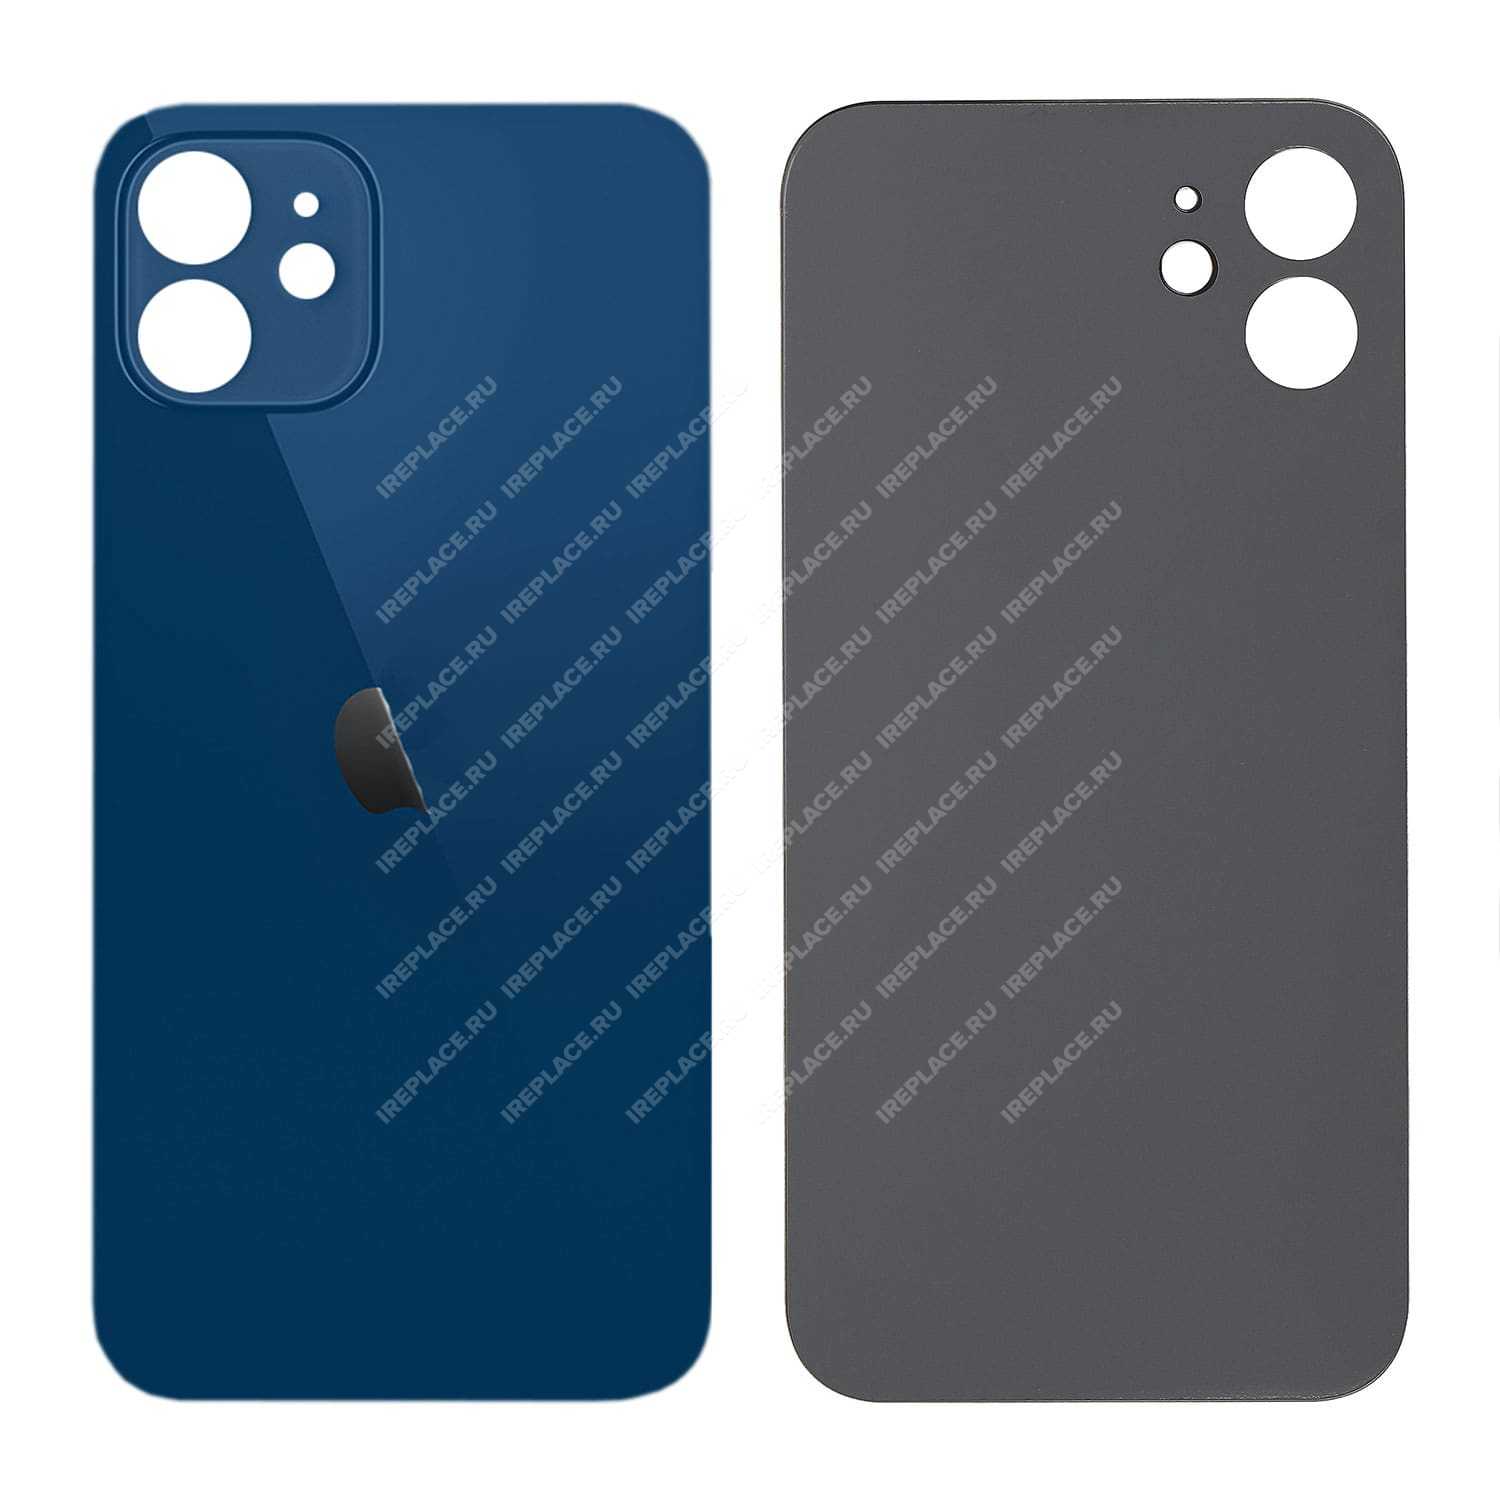 Заднее стекло для iPhone 12 Mini, Blue | цена 1 990.00Р. Купить с доставкой  по России можно на сайте iReplace или по ☎ 8-800-555-83-35